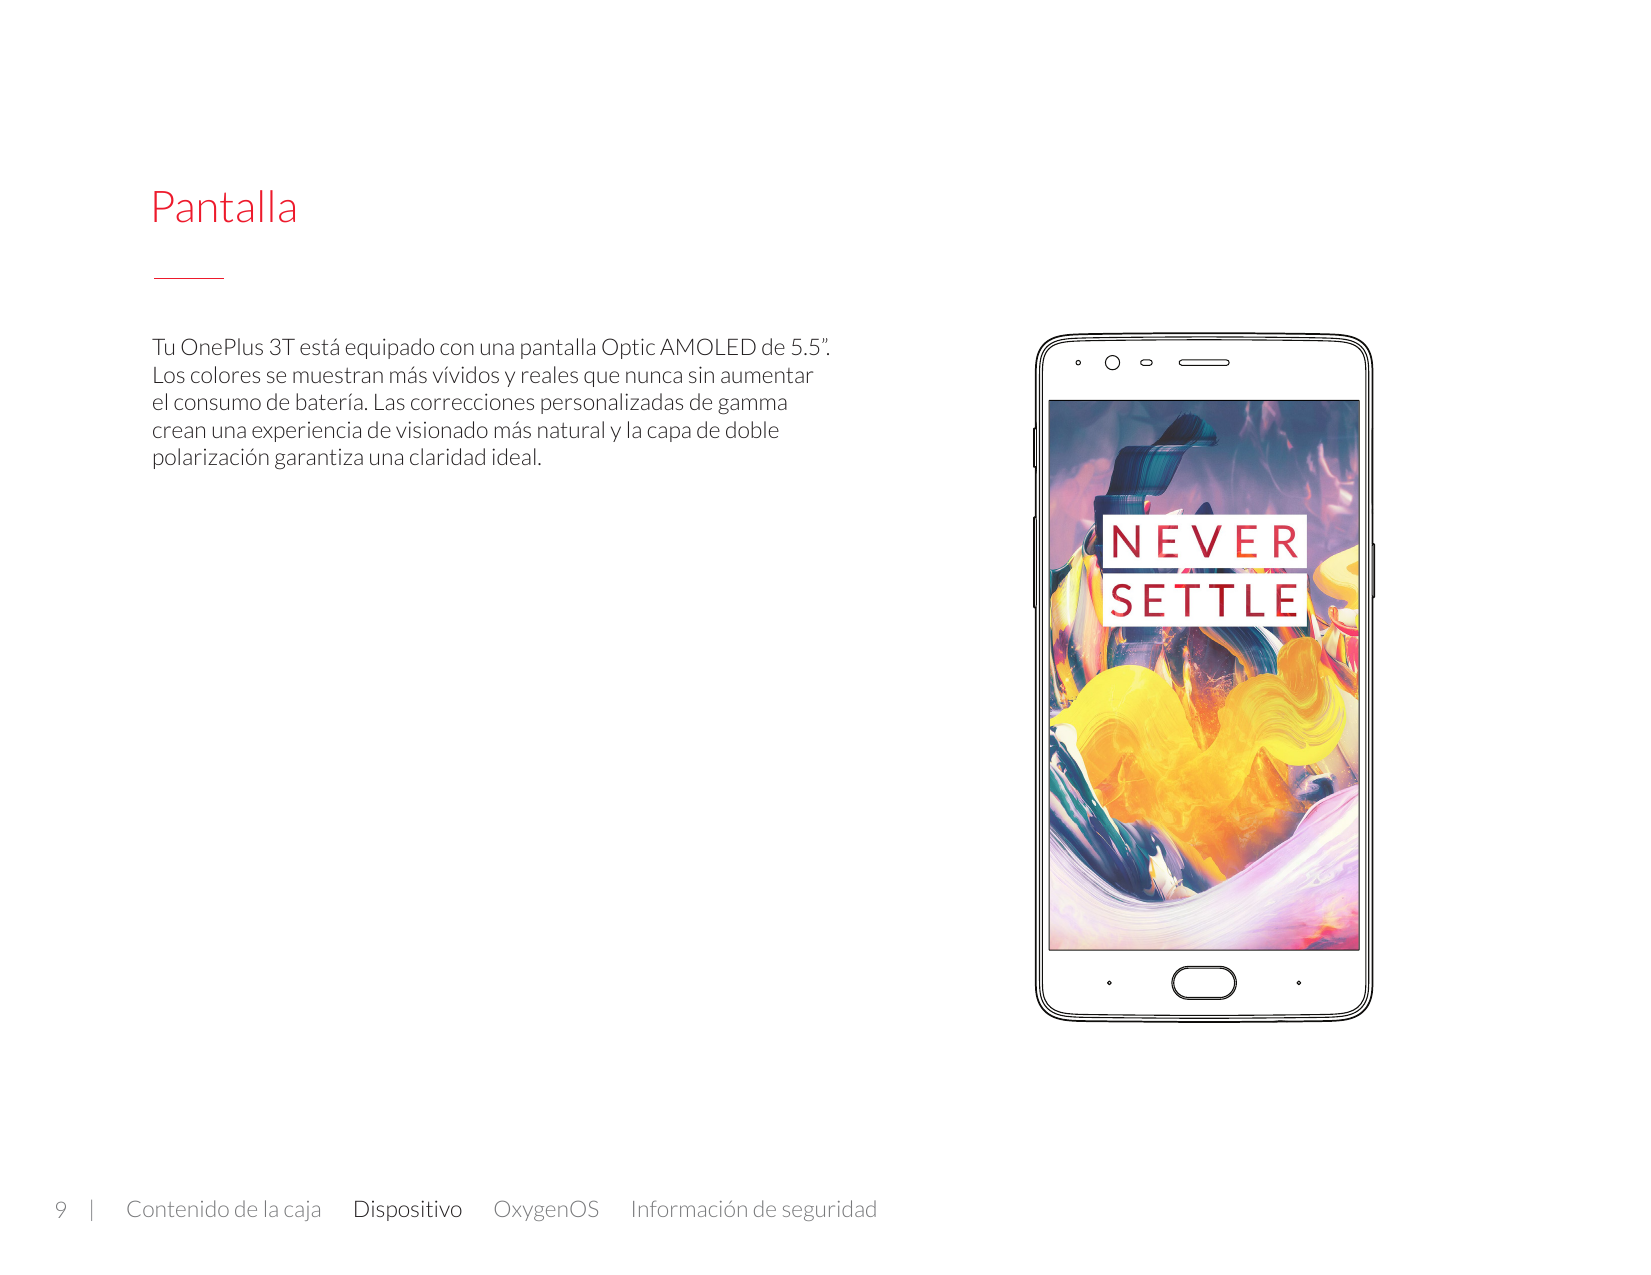 PantallaTu OnePlus 3T está equipado con una pantalla Optic AMOLED de 5.5”.Los colores se muestran más vívidos y reales que nunca